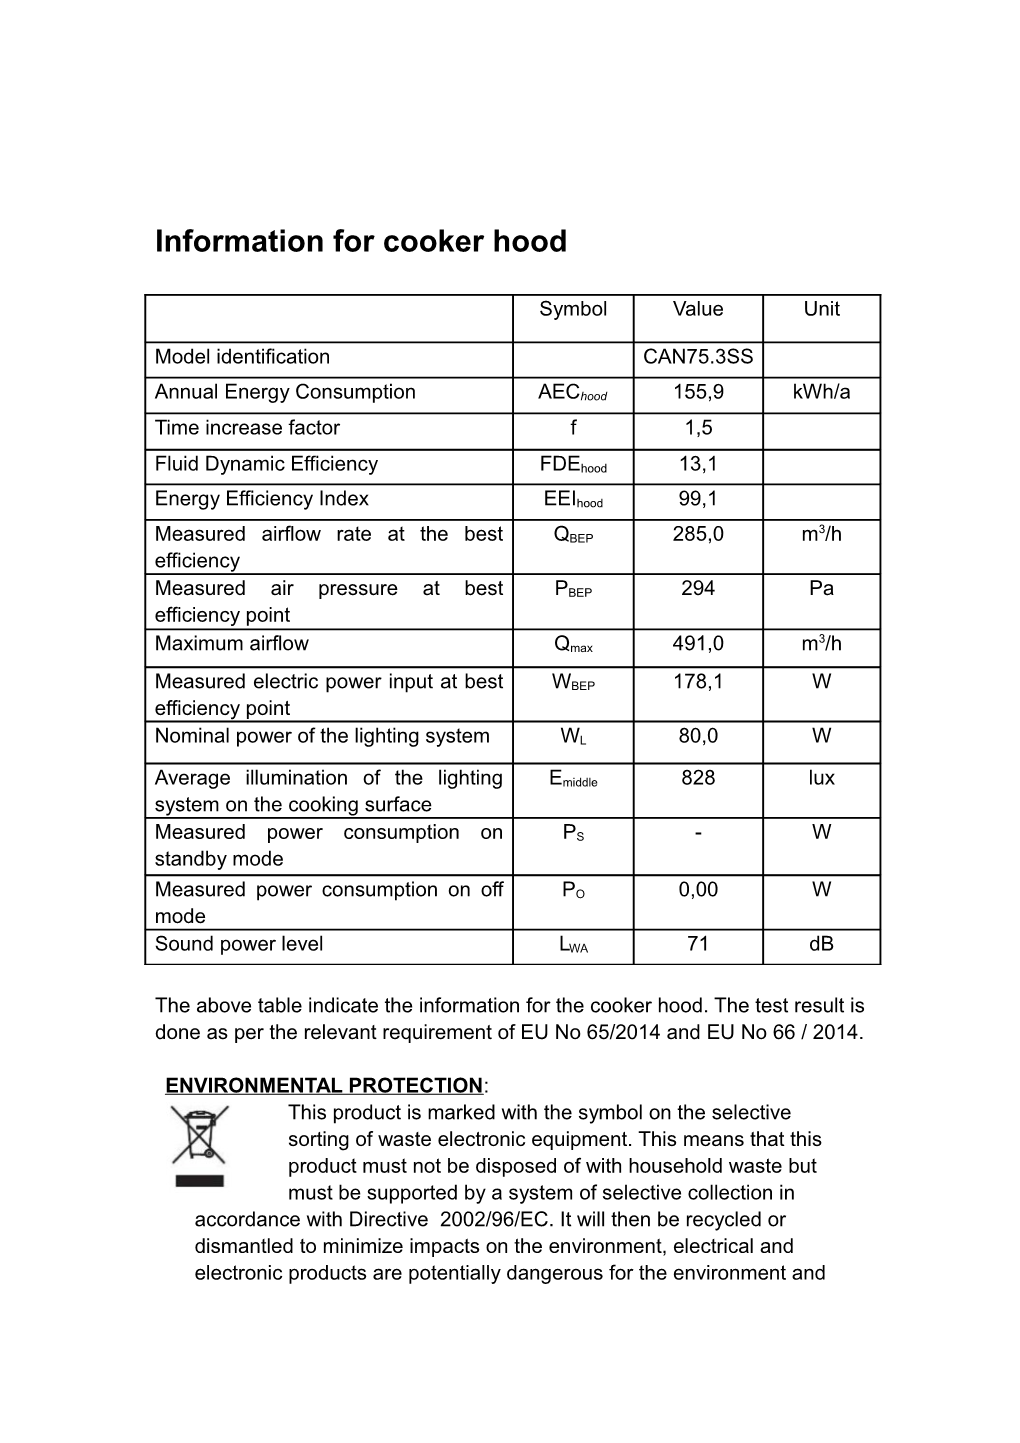 Information for Cooker Hood